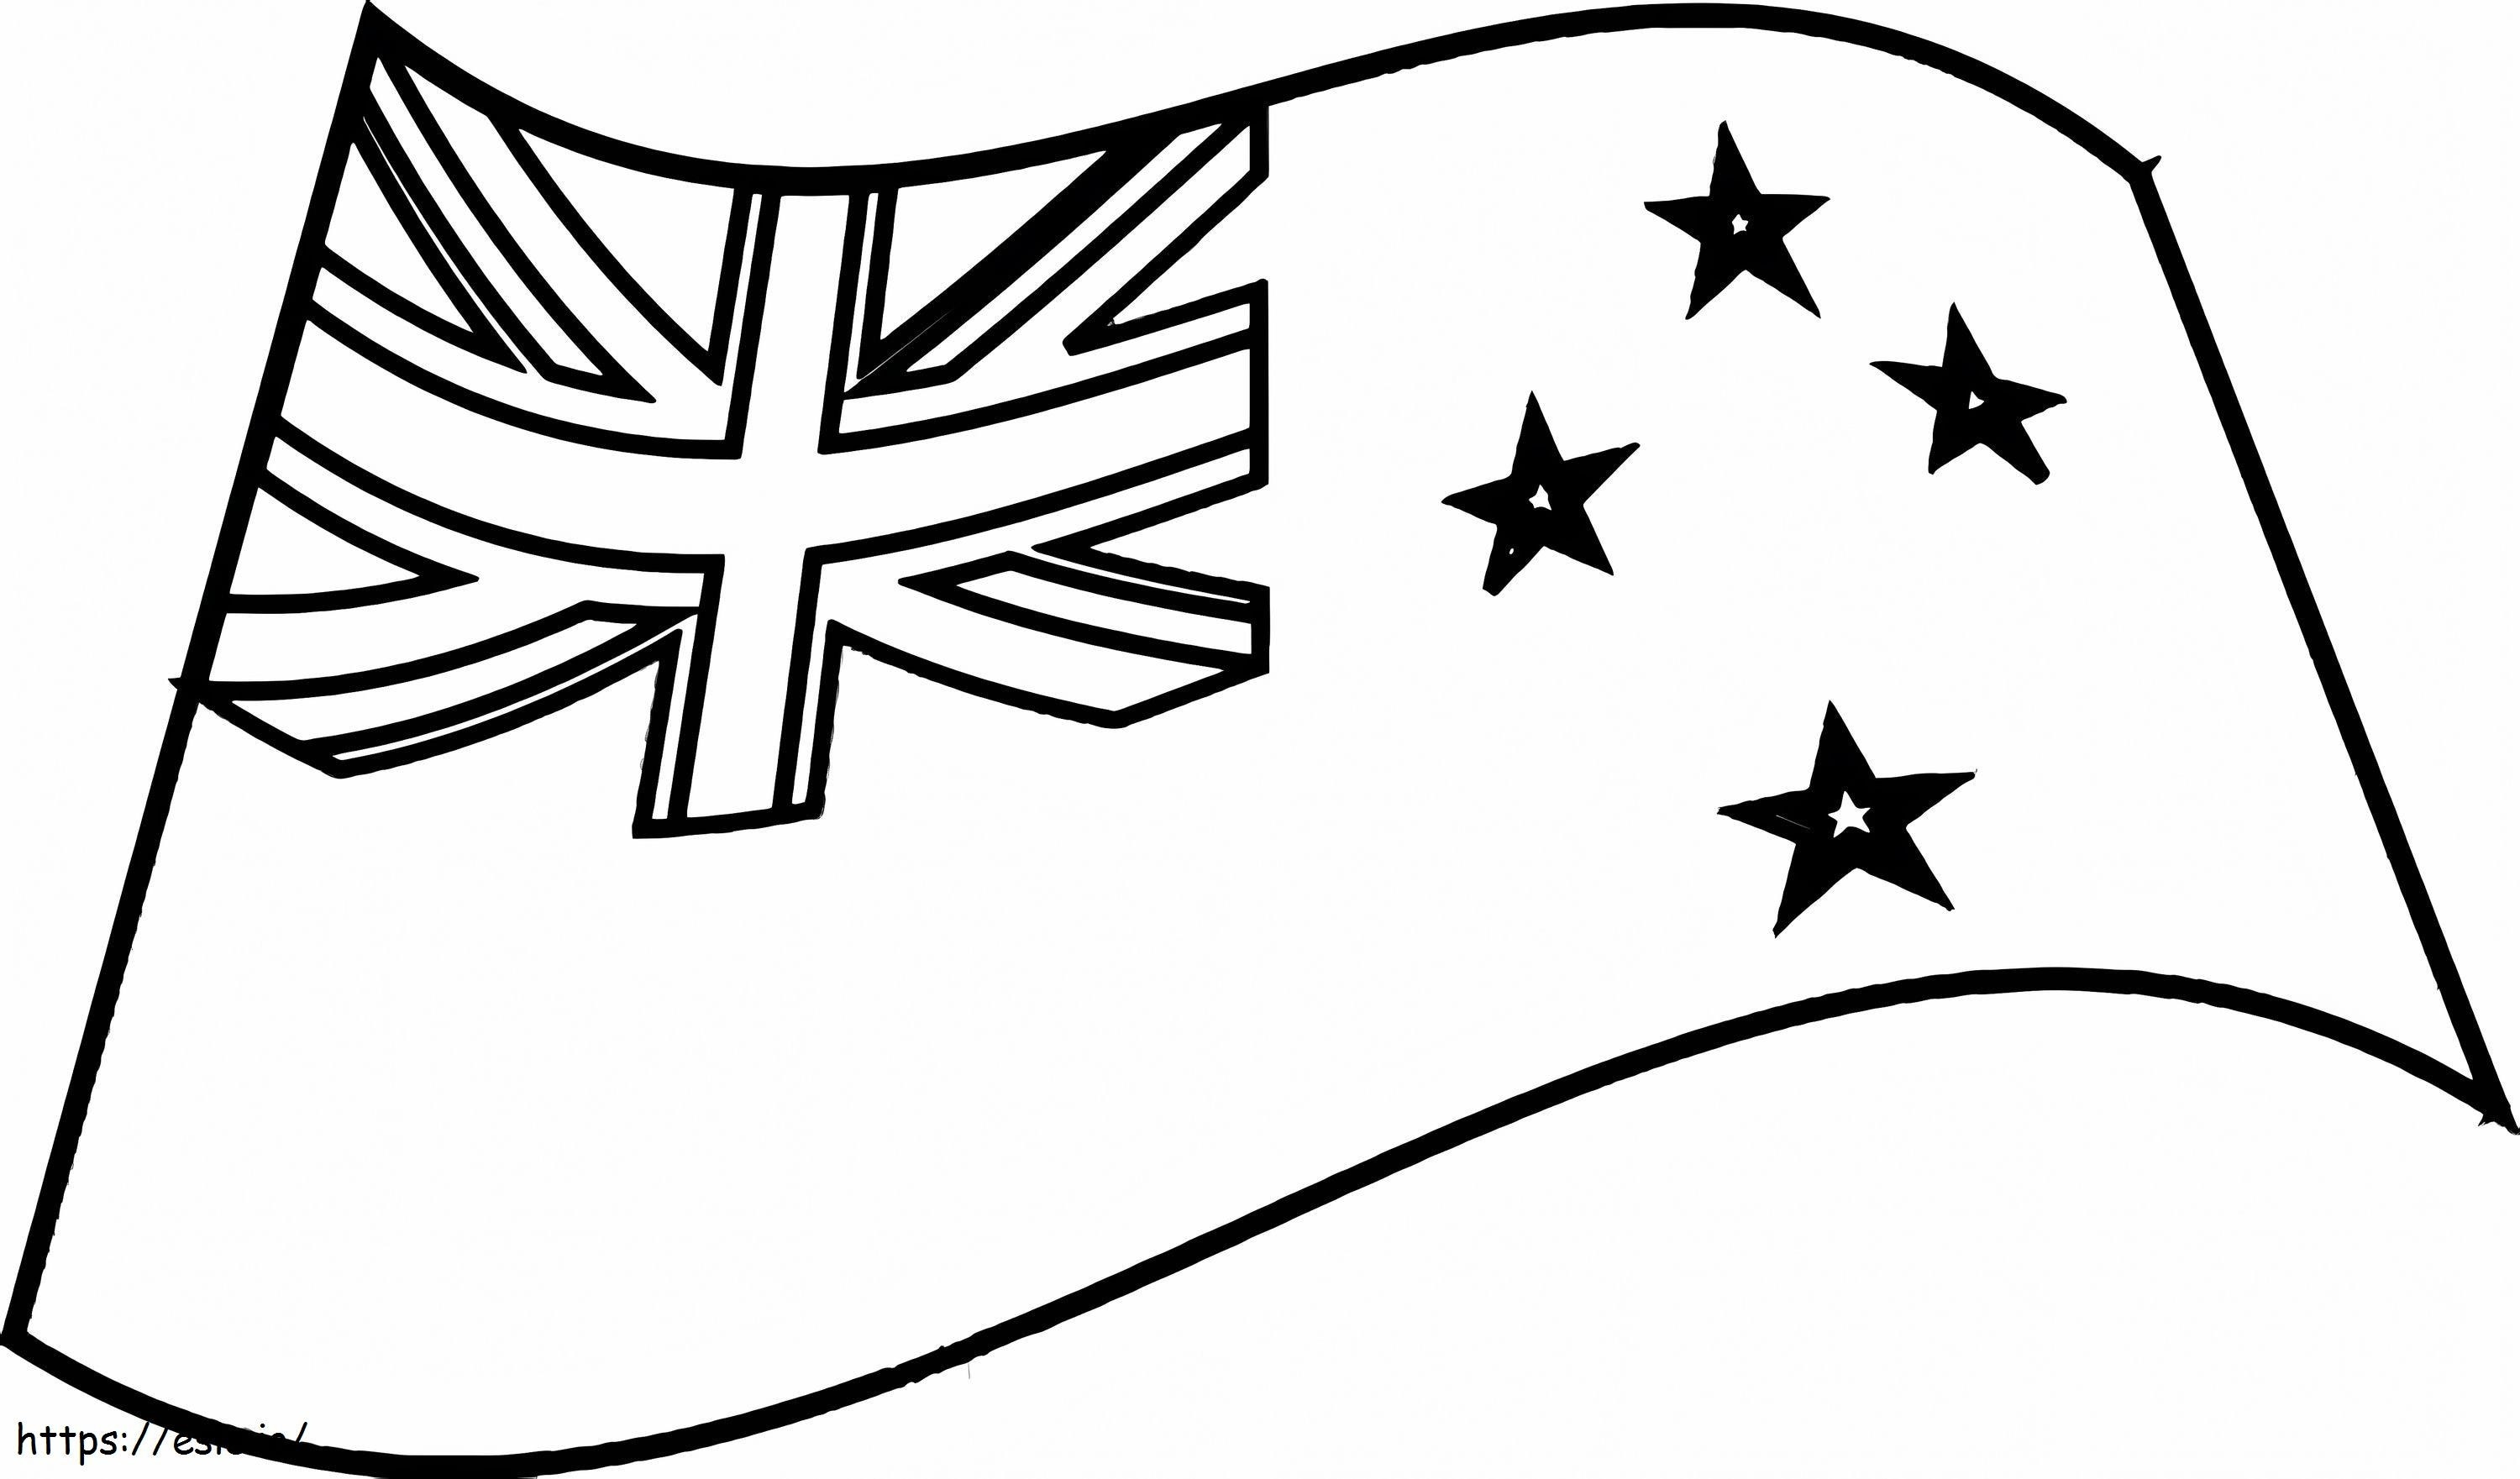 Yeni Zelanda Bayrağı 2 boyama